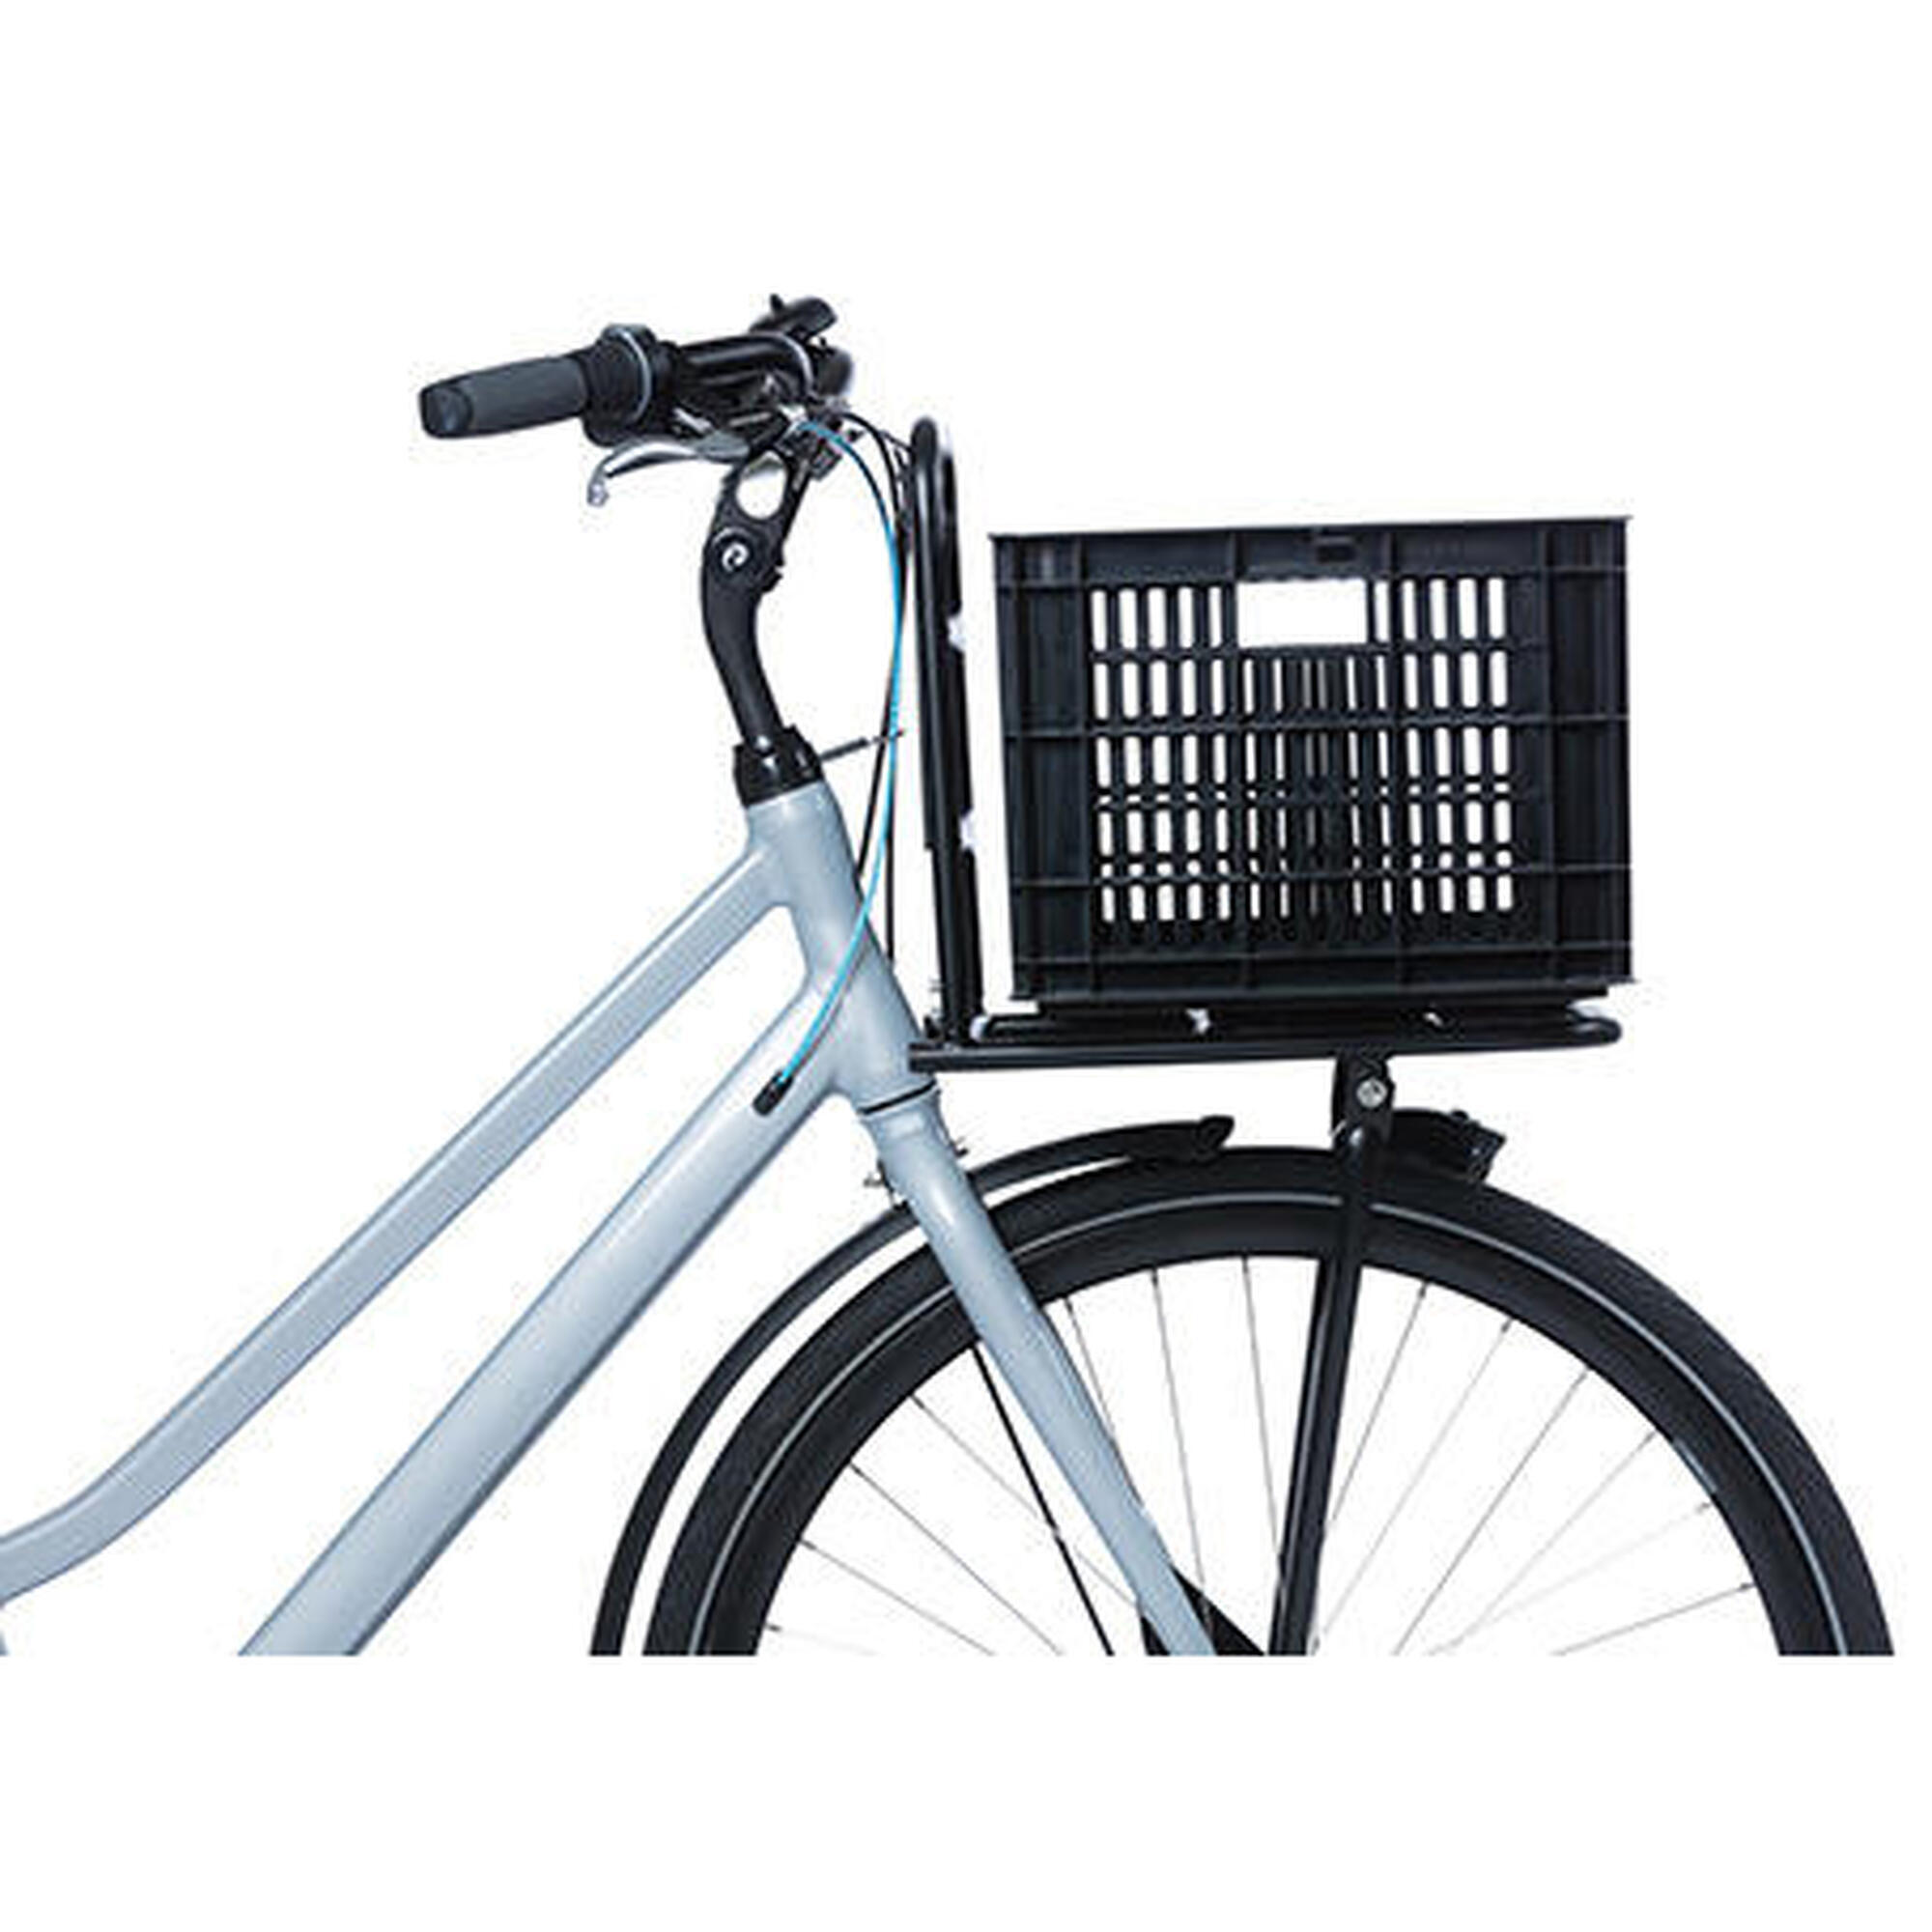 Caisse à vélo recyclée Caisse MIK M 29,5 litres 35 x 45 x 25 cm - noire